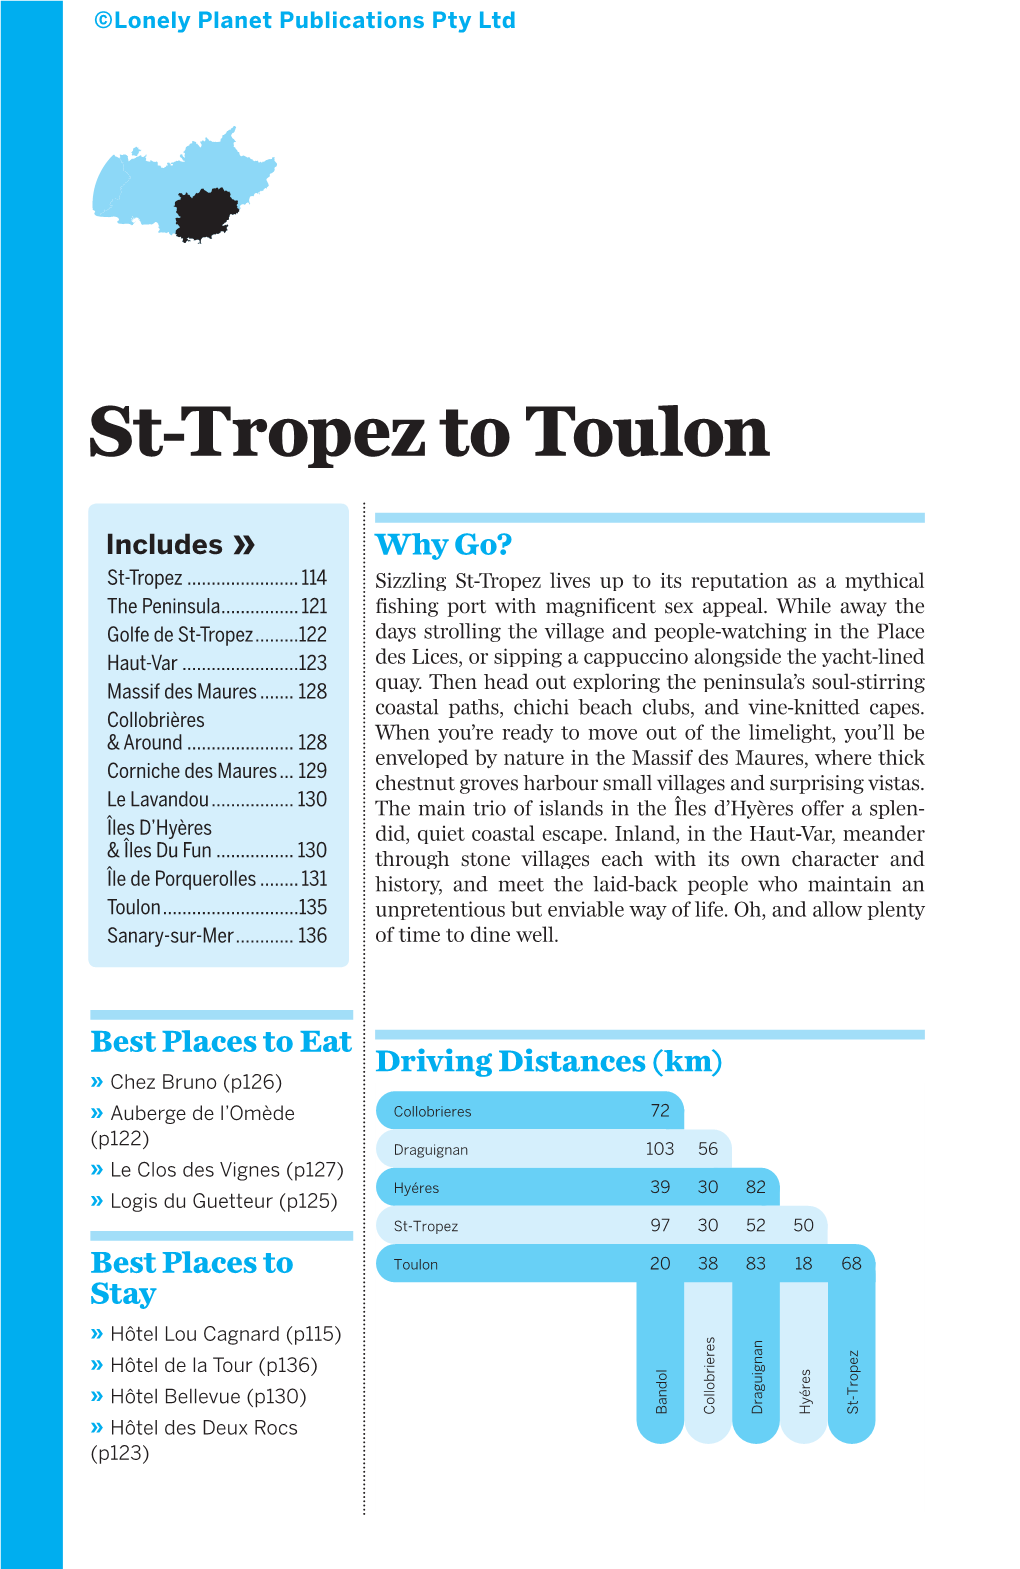 St-Tropez to Toulon